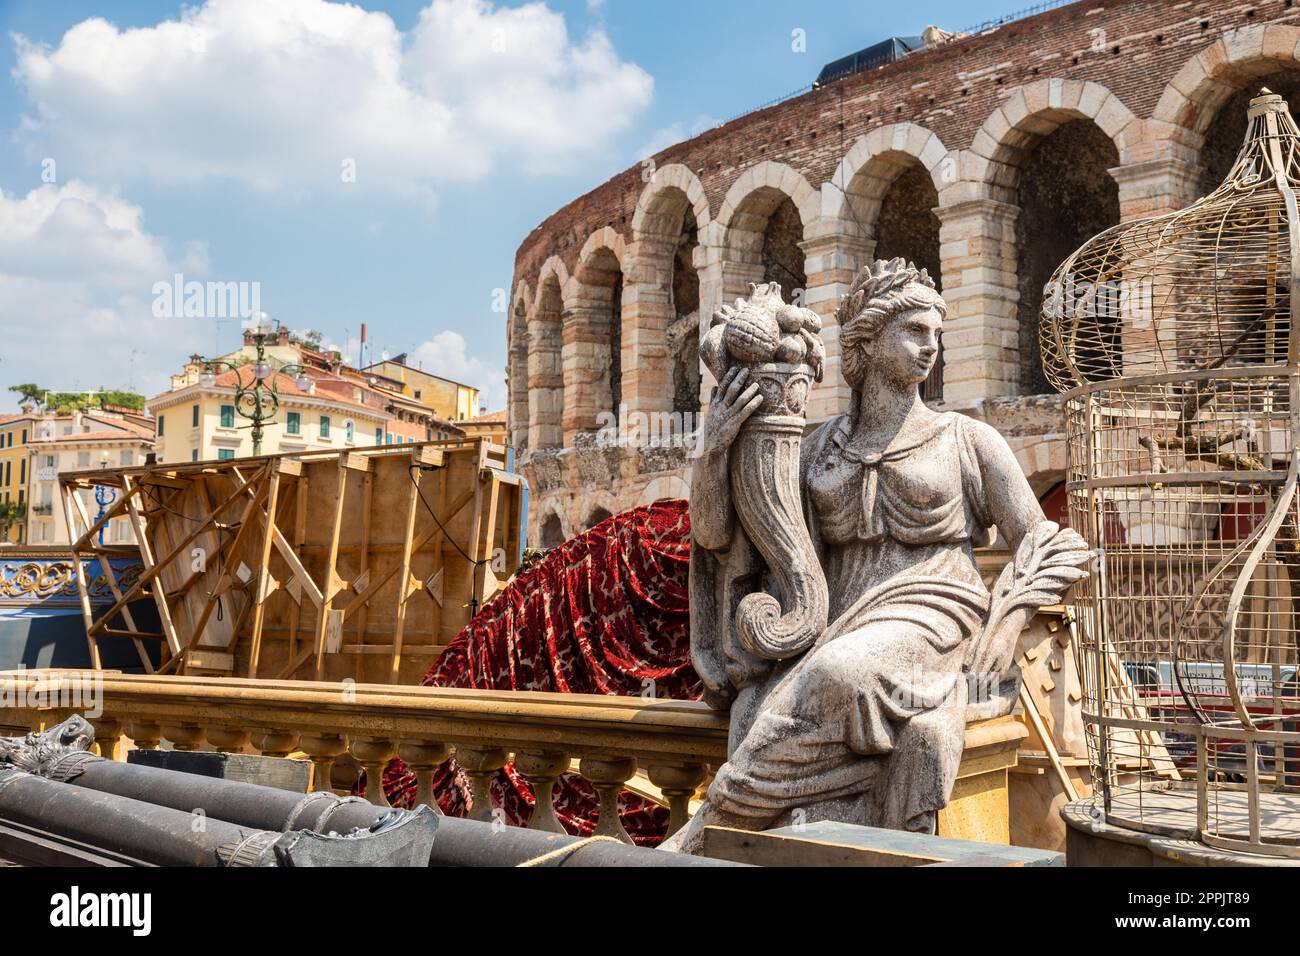 Vérone, Italie - préparer la scène pour la performance de théâtre dans la célèbre Arena di Verona Banque D'Images